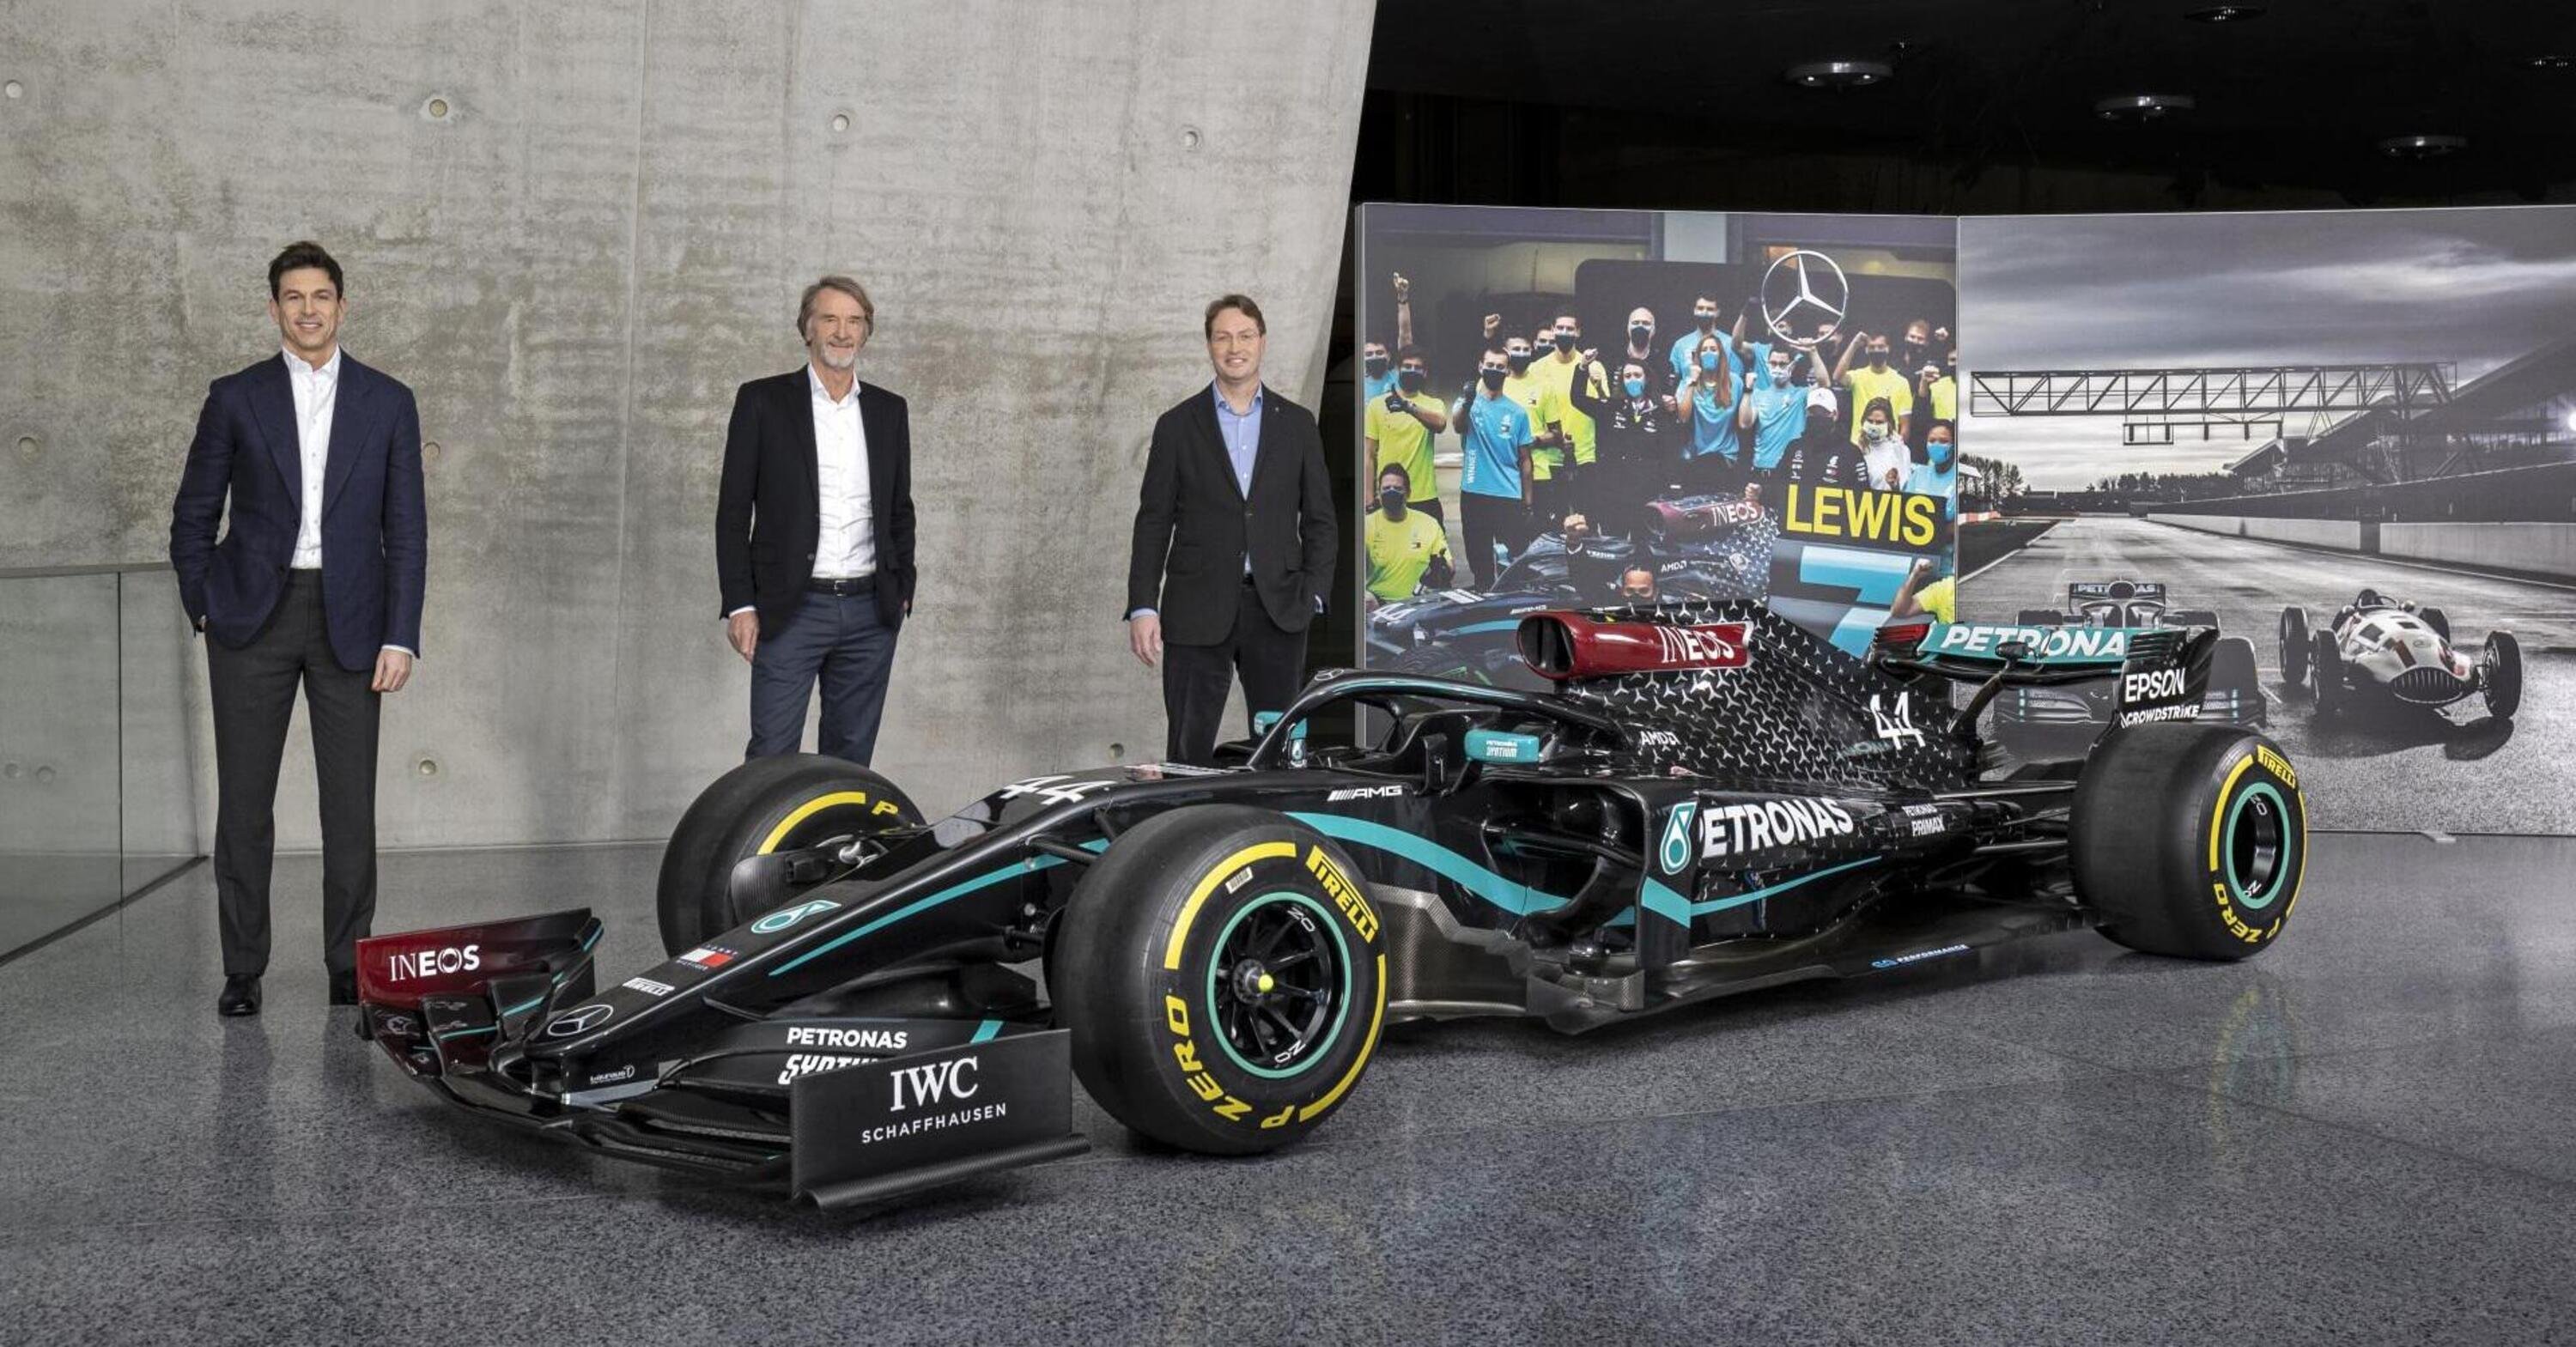 F1, Mercedes: INEOS acquisisce un terzo delle quote del team. Wolff resta